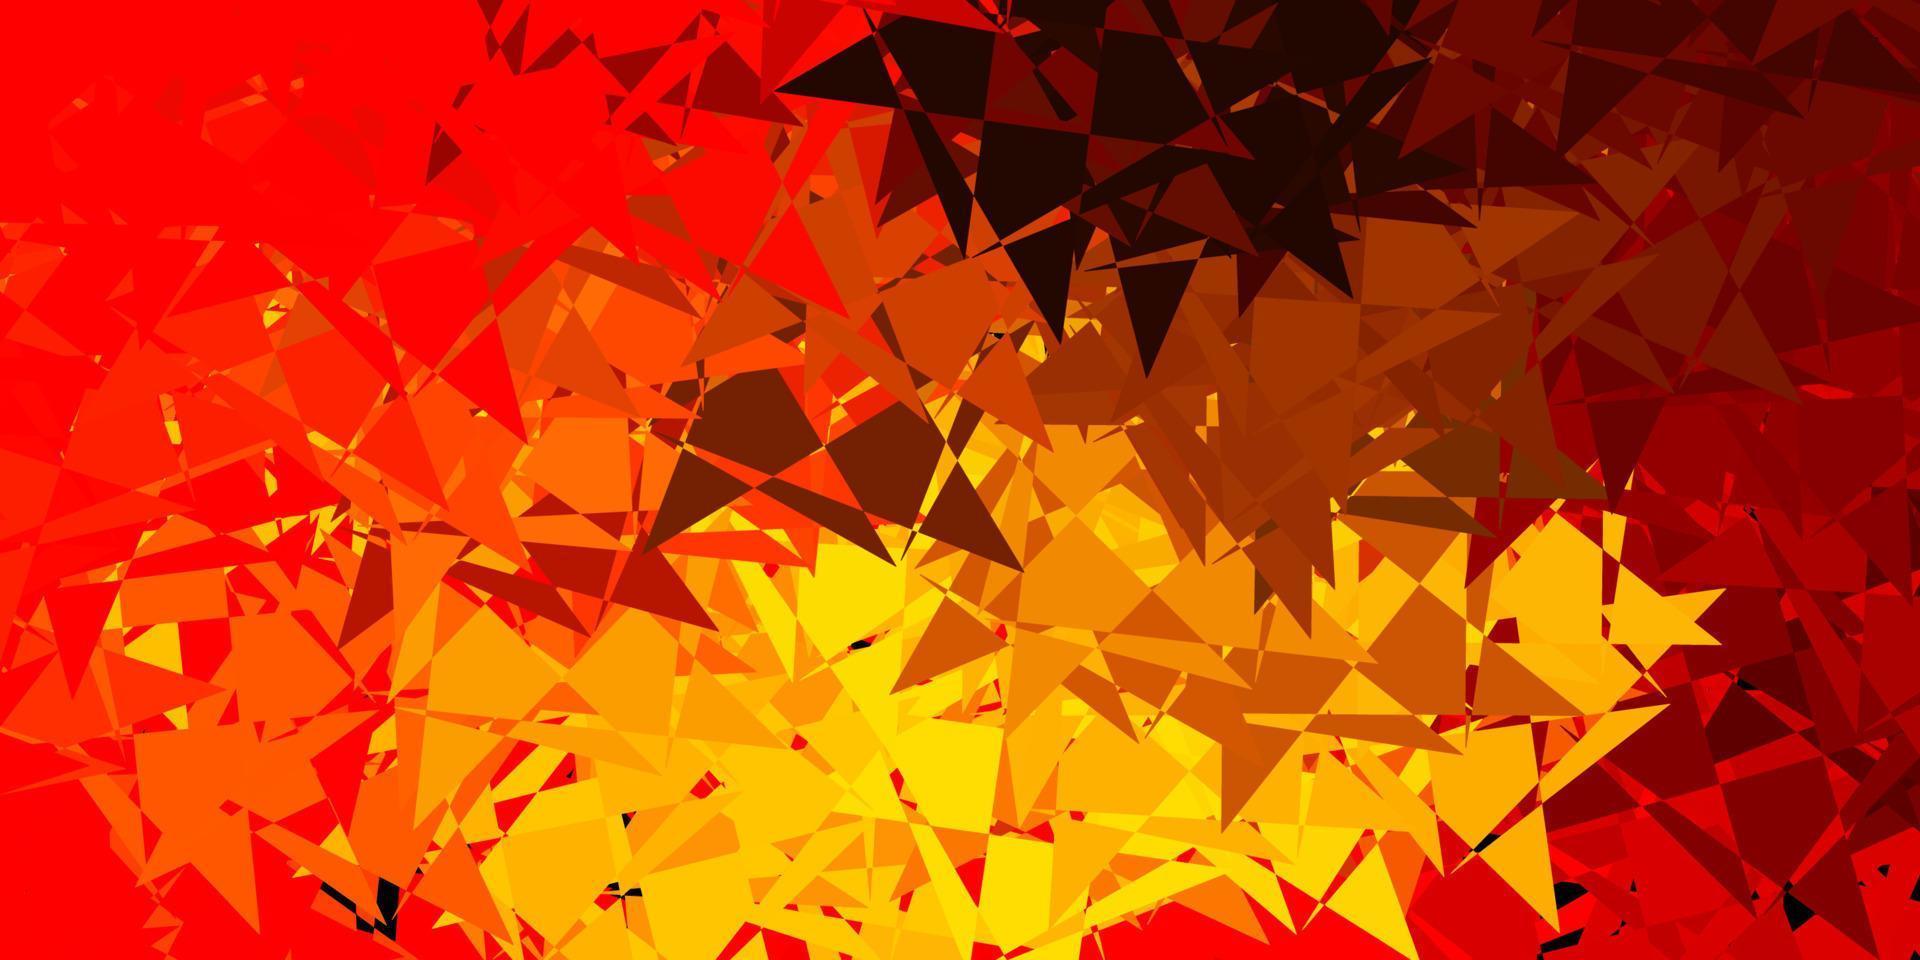 toile de fond de vecteur rouge et jaune clair avec des triangles, des lignes.